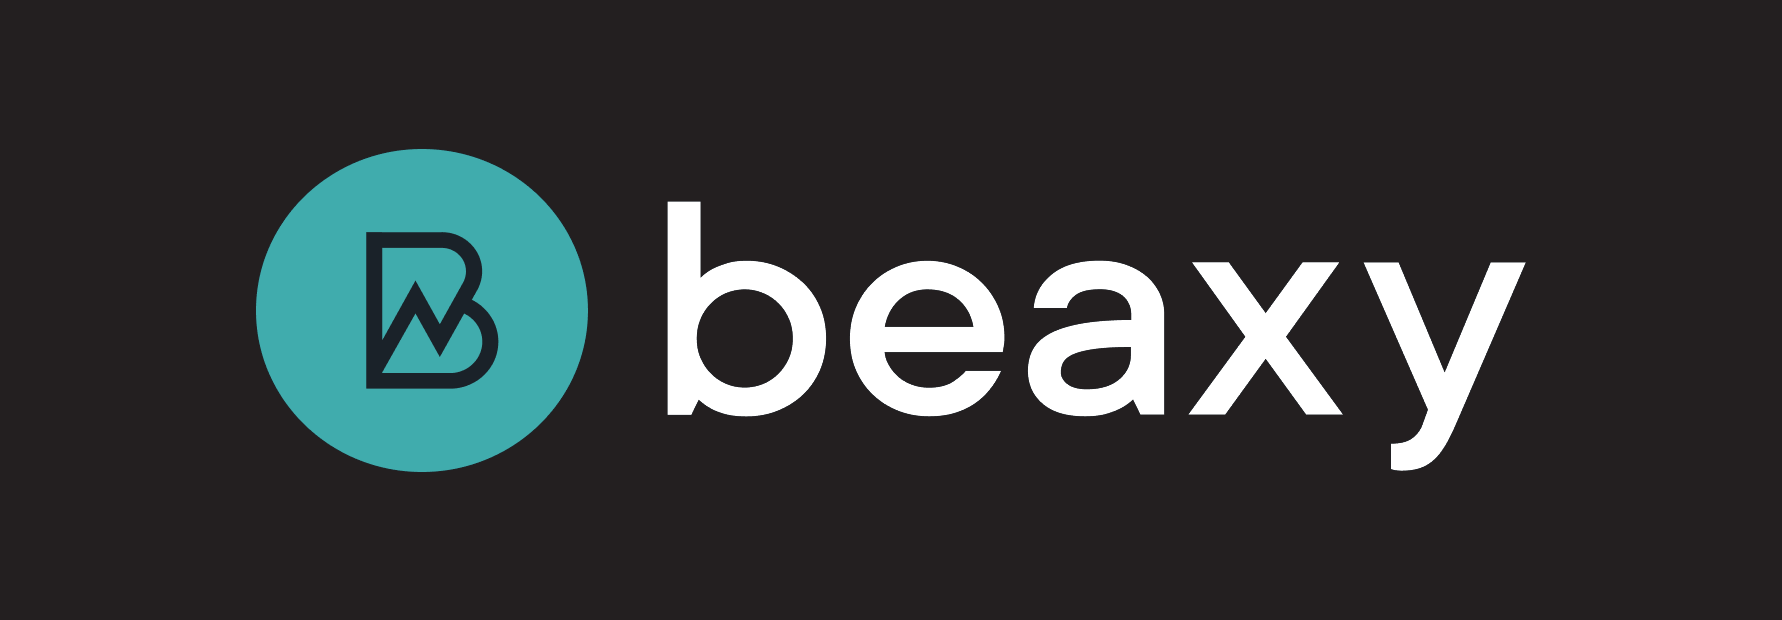 beaxy-logo.png